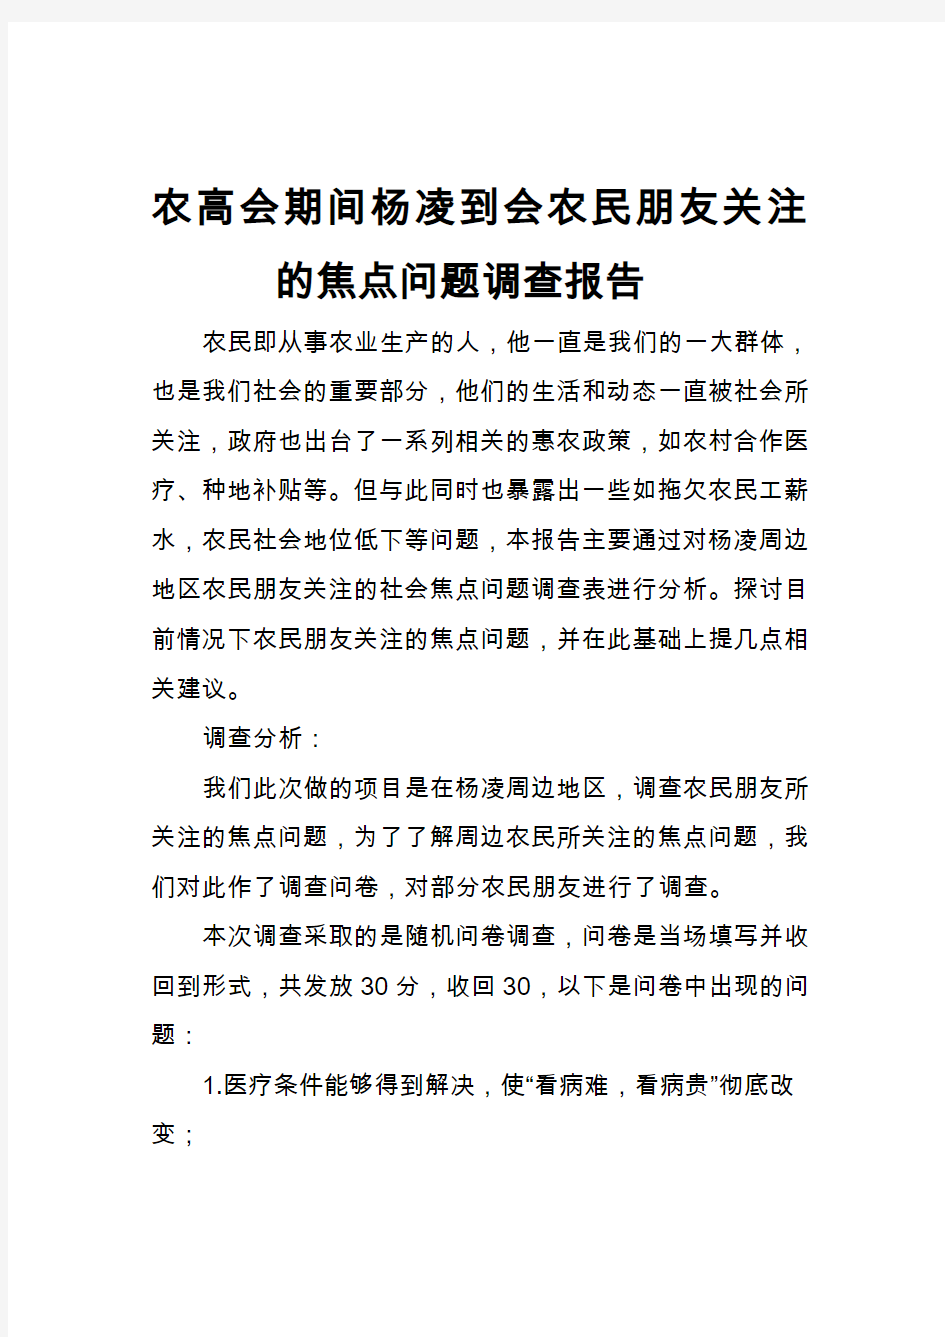 农高会期间杨凌到会农民朋友关注的焦点问题调查报告(1)